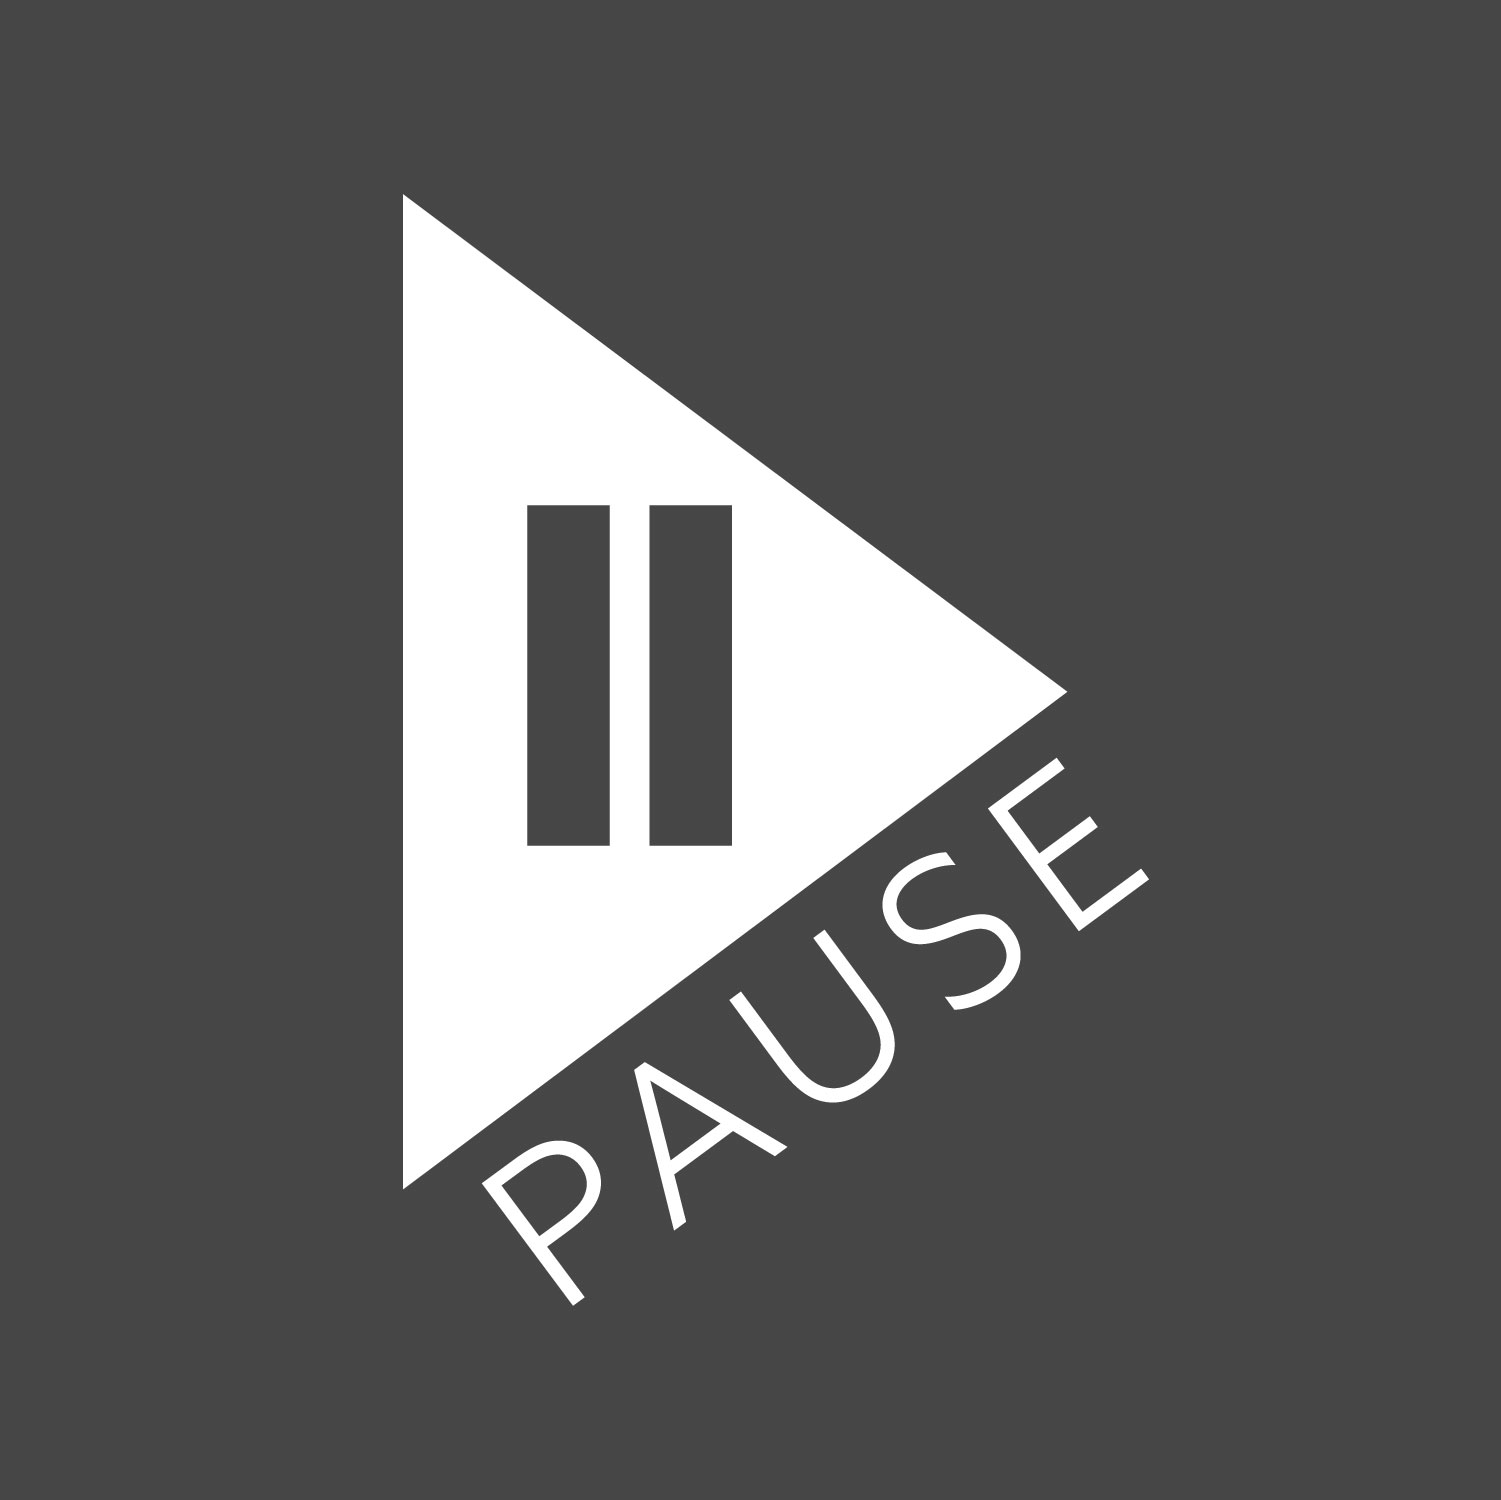 Pause_ProfileImage1